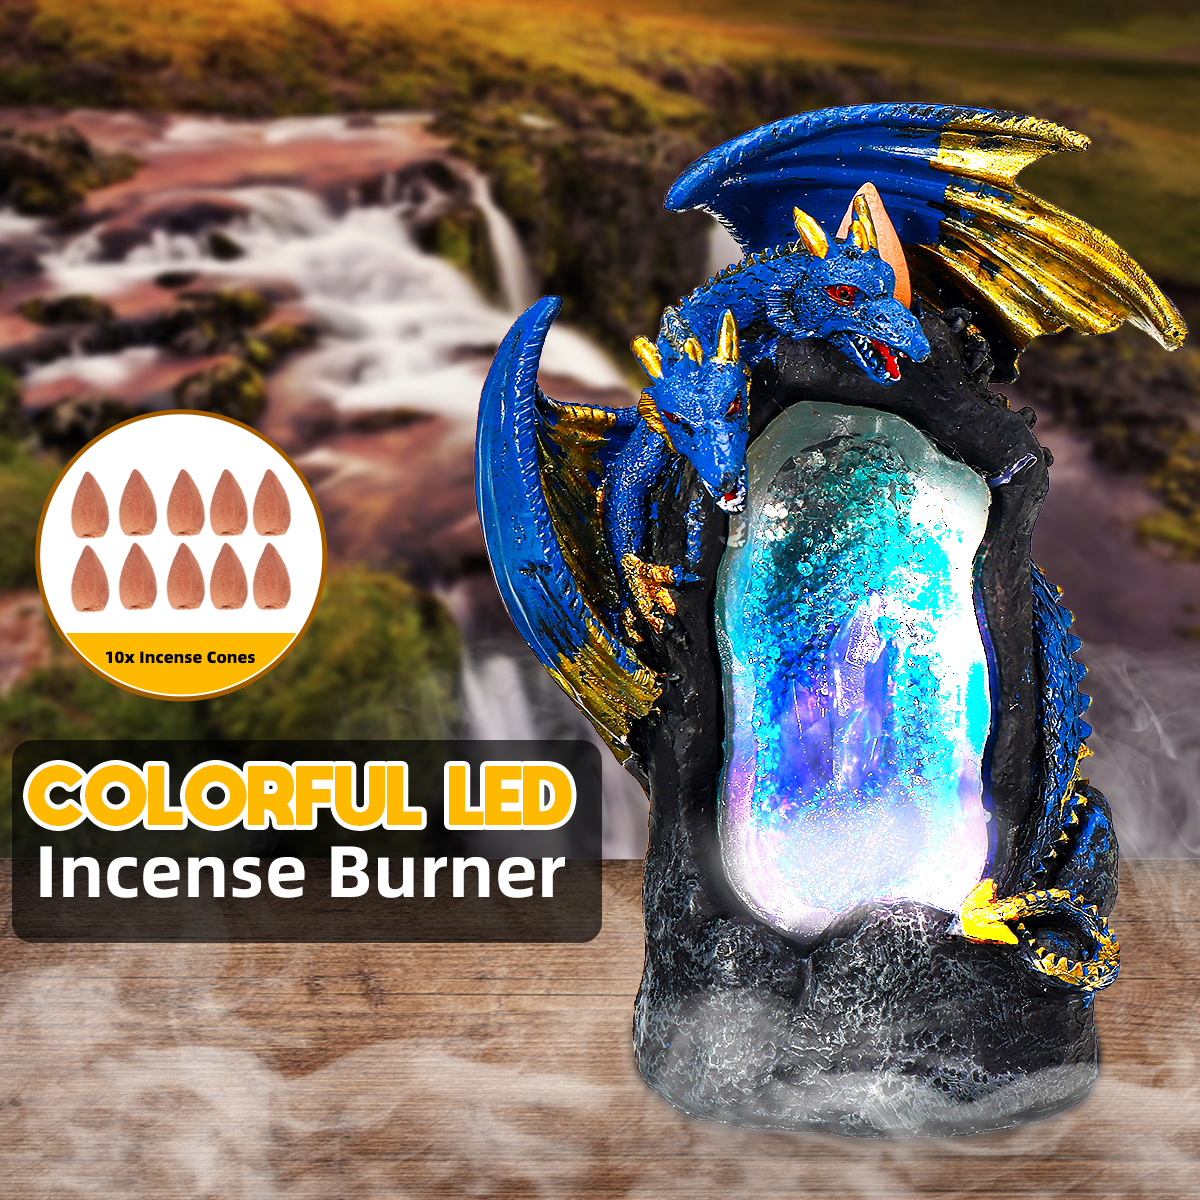 Colorful-LED-Dragon-Incense-Burner-Backflow-Censer-Holder-Buddhism-Home-Decor-1666551-1